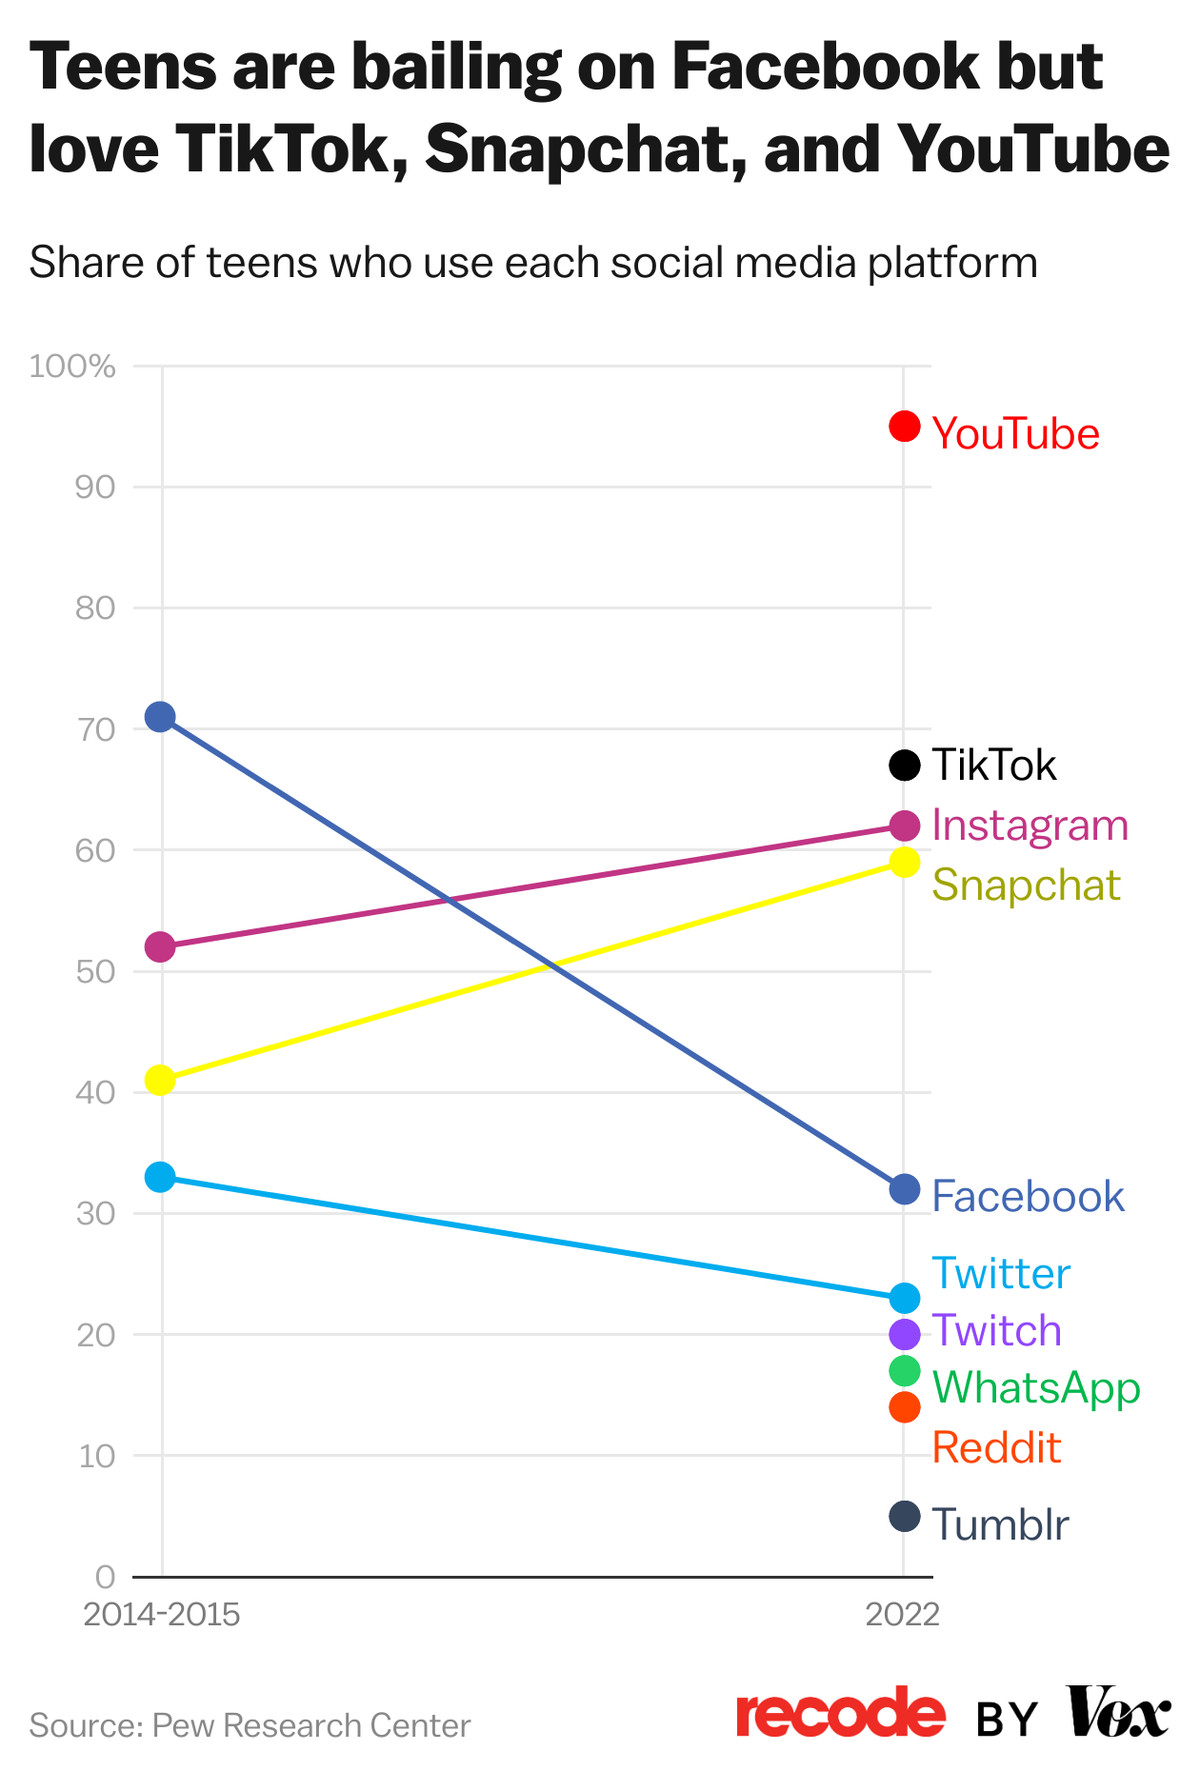 แผนภูมิ: ส่วนแบ่งของวัยรุ่นที่ใช้แต่ละแพลตฟอร์มโซเชียลมีเดีย  วัยรุ่นกำลังประกันตัวบน Facebook แต่รัก TikTok, Snapchat และ YouTube 